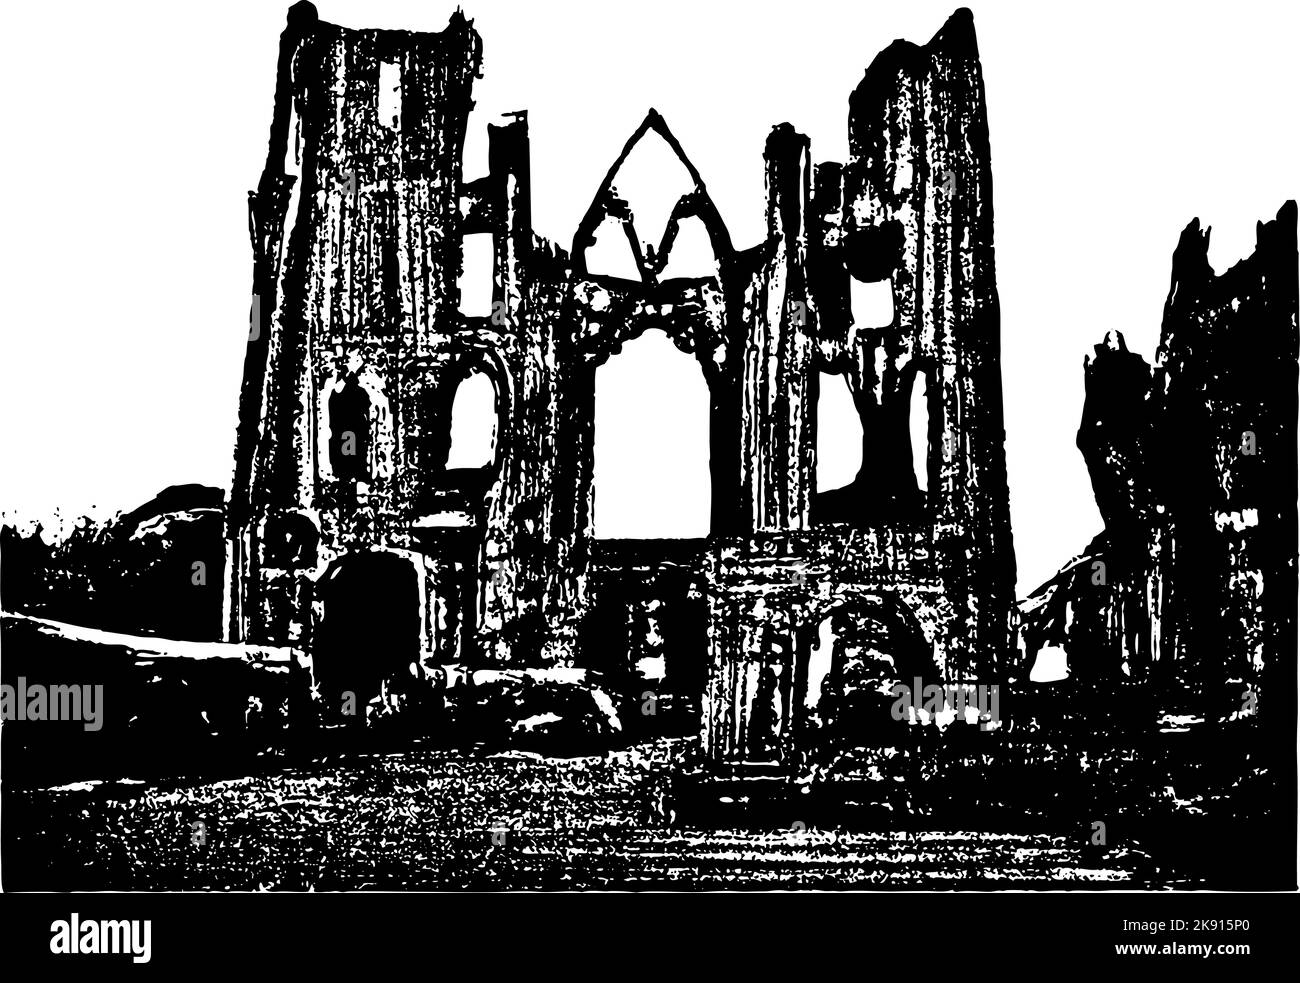 Antiche rovine della vecchia chiesa con torri e ingresso. Immagine in bianco e nero ad alto contrasto. Illustrazione Vettoriale